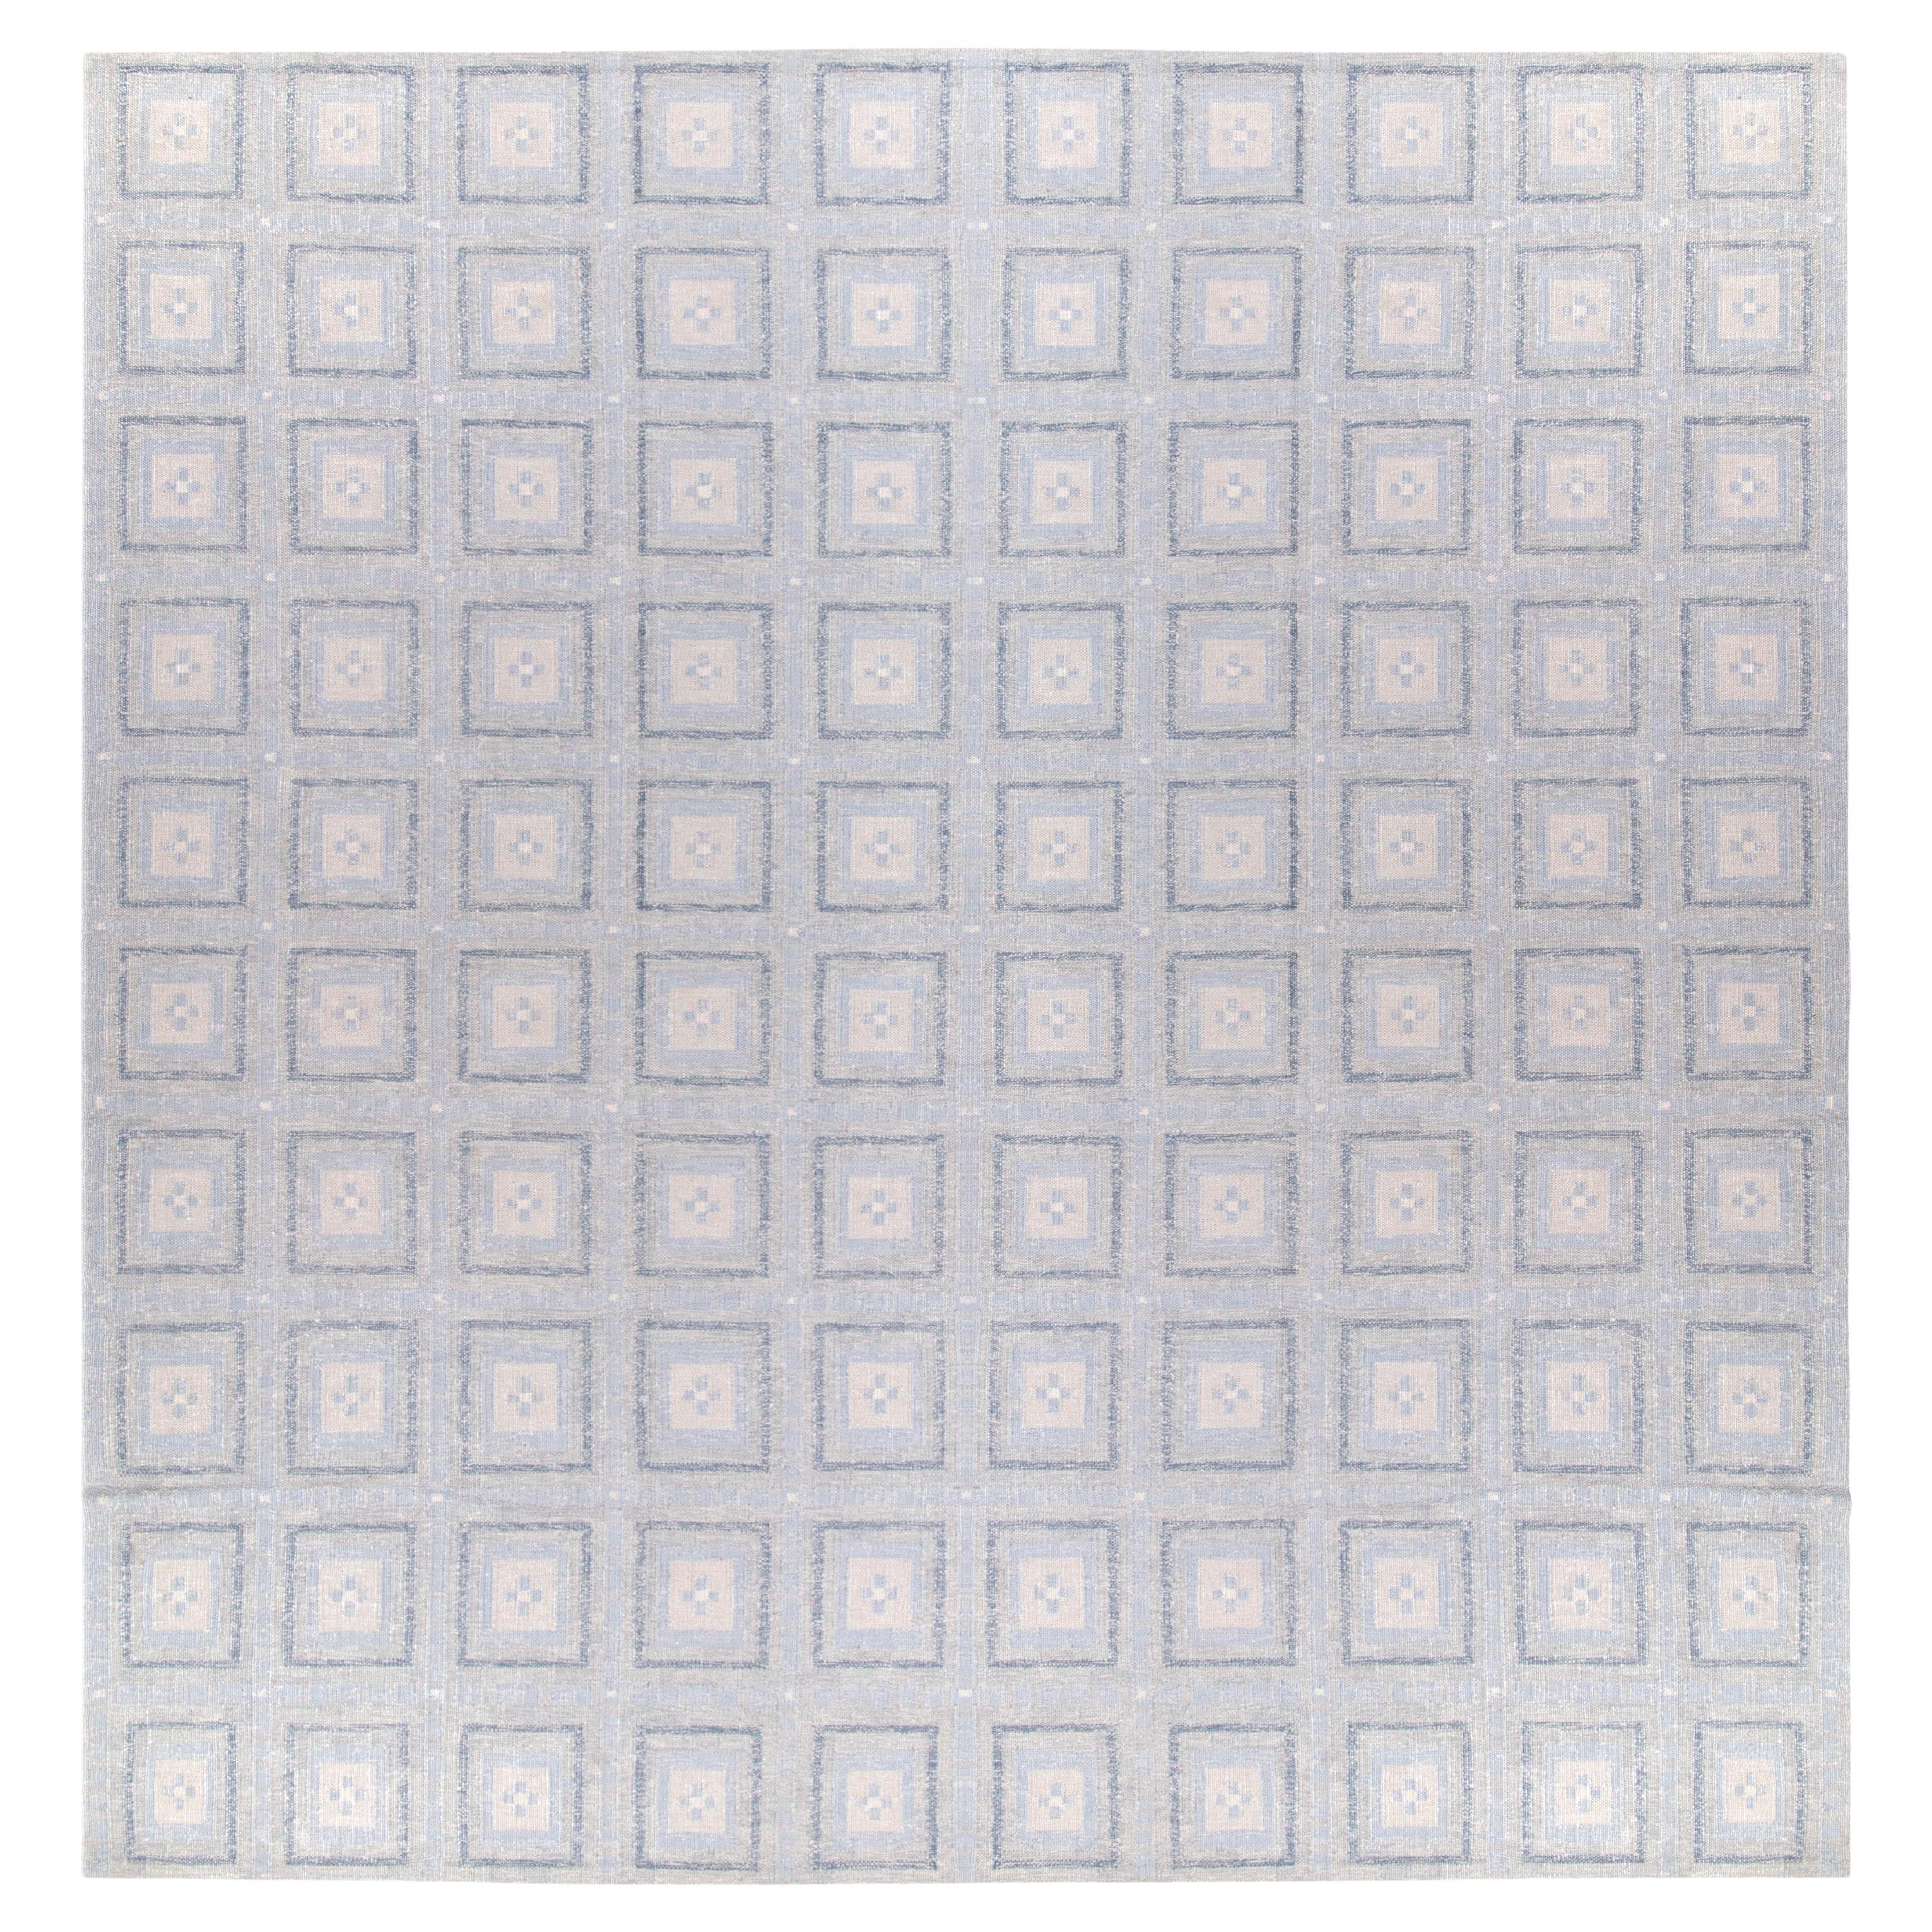 Handgewebter skandinavischer Teppich und Kelim, blau-weißes geometrisches Muster, Teppich